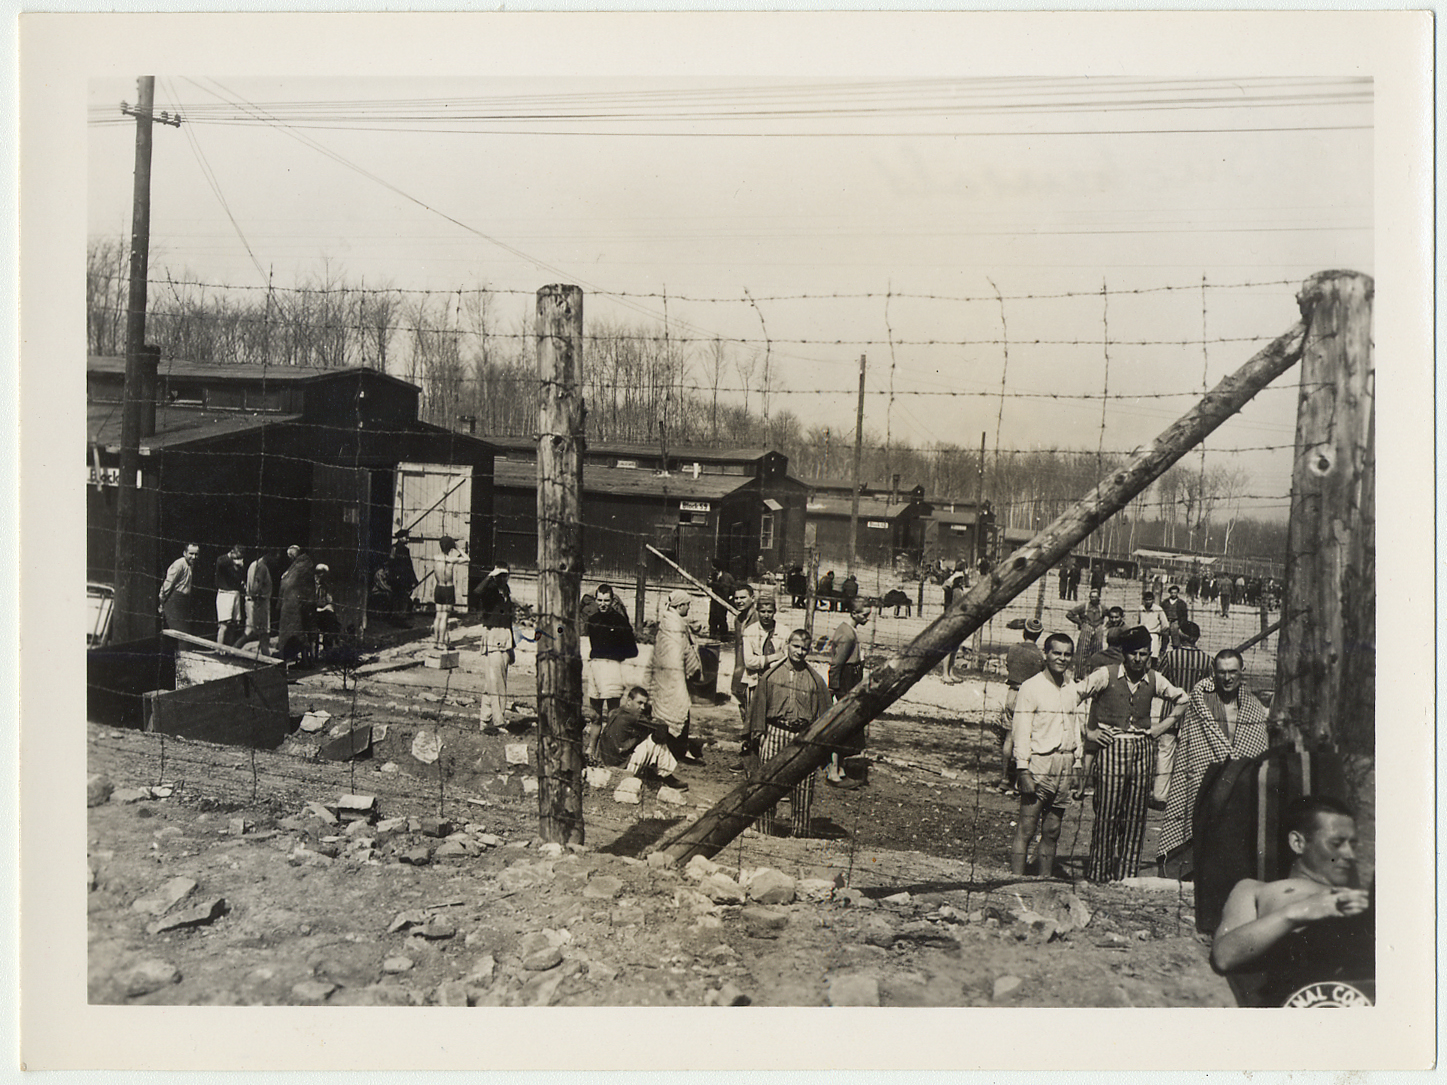 Survivants dans le camp de concentration de Buchenwald peu après leur libération. Buchenwald, Allemagne, avril 1945. 